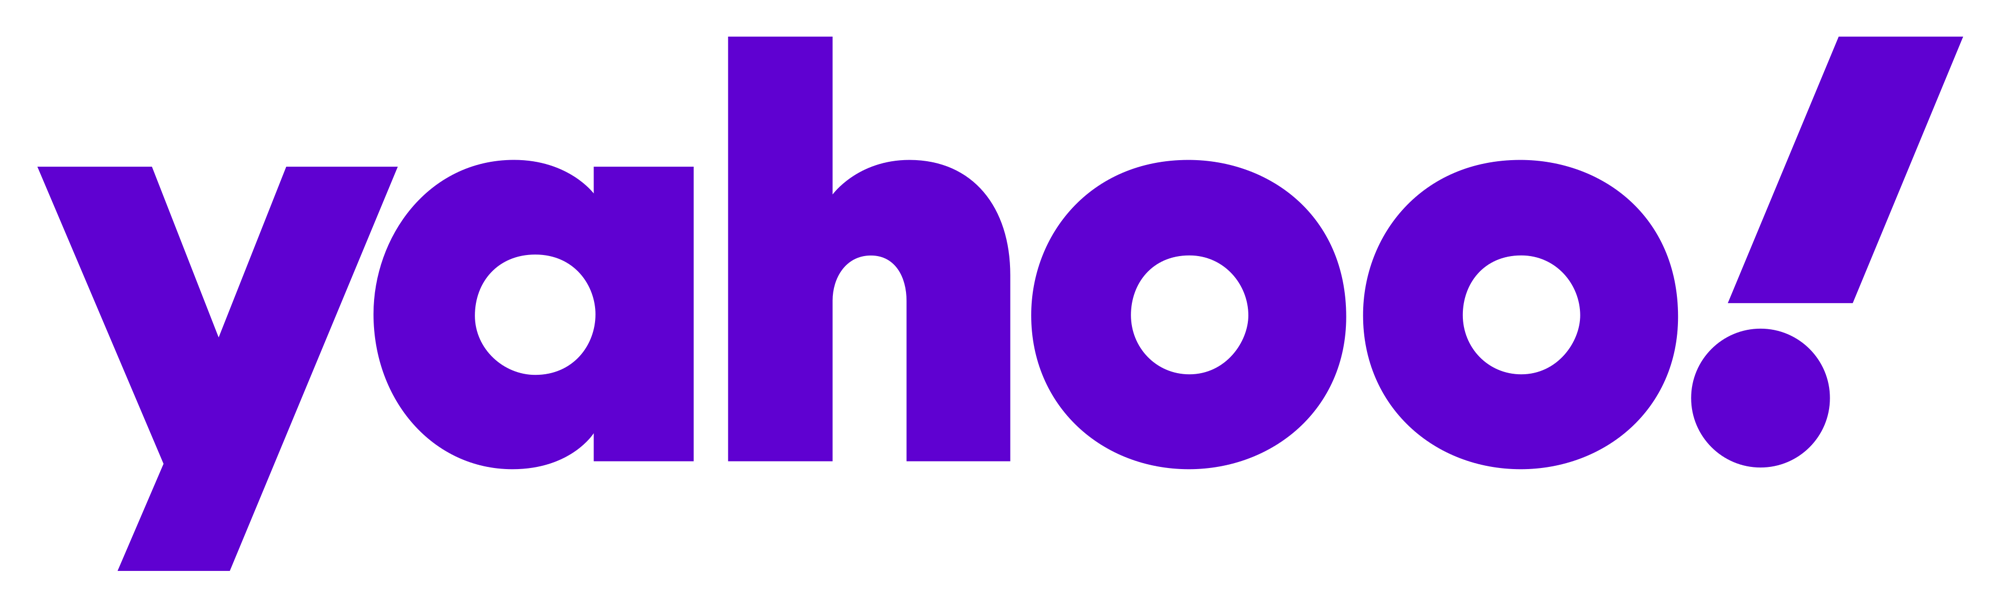 Nuevo logotipo e identidad para Yahoo!  por Pentagram